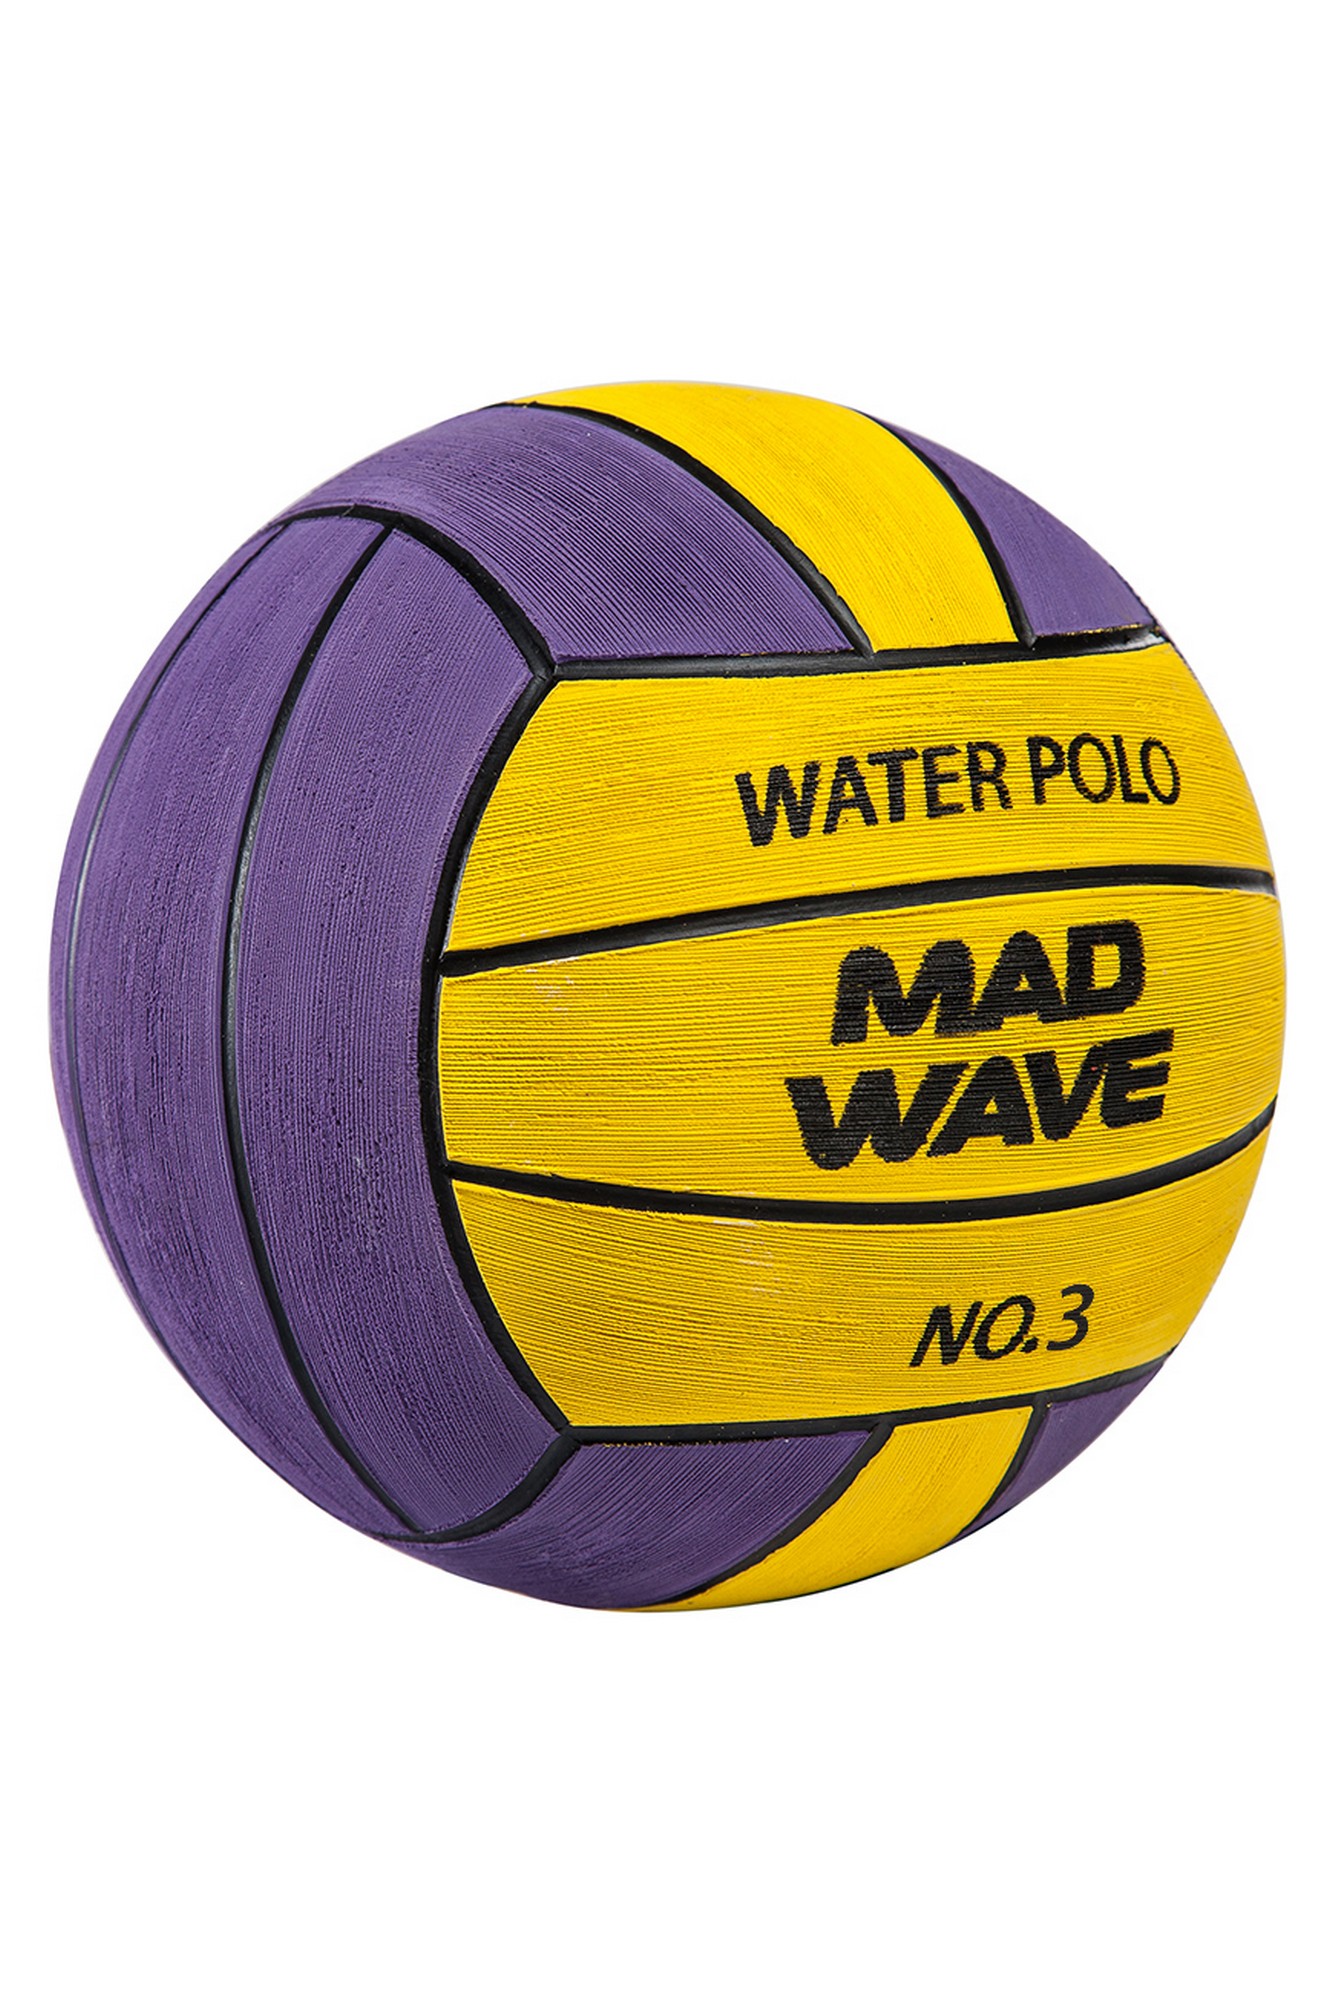 Мяч для водного поло Mad Wave WP Official #3 M2230 03 3 06W 1333_2000